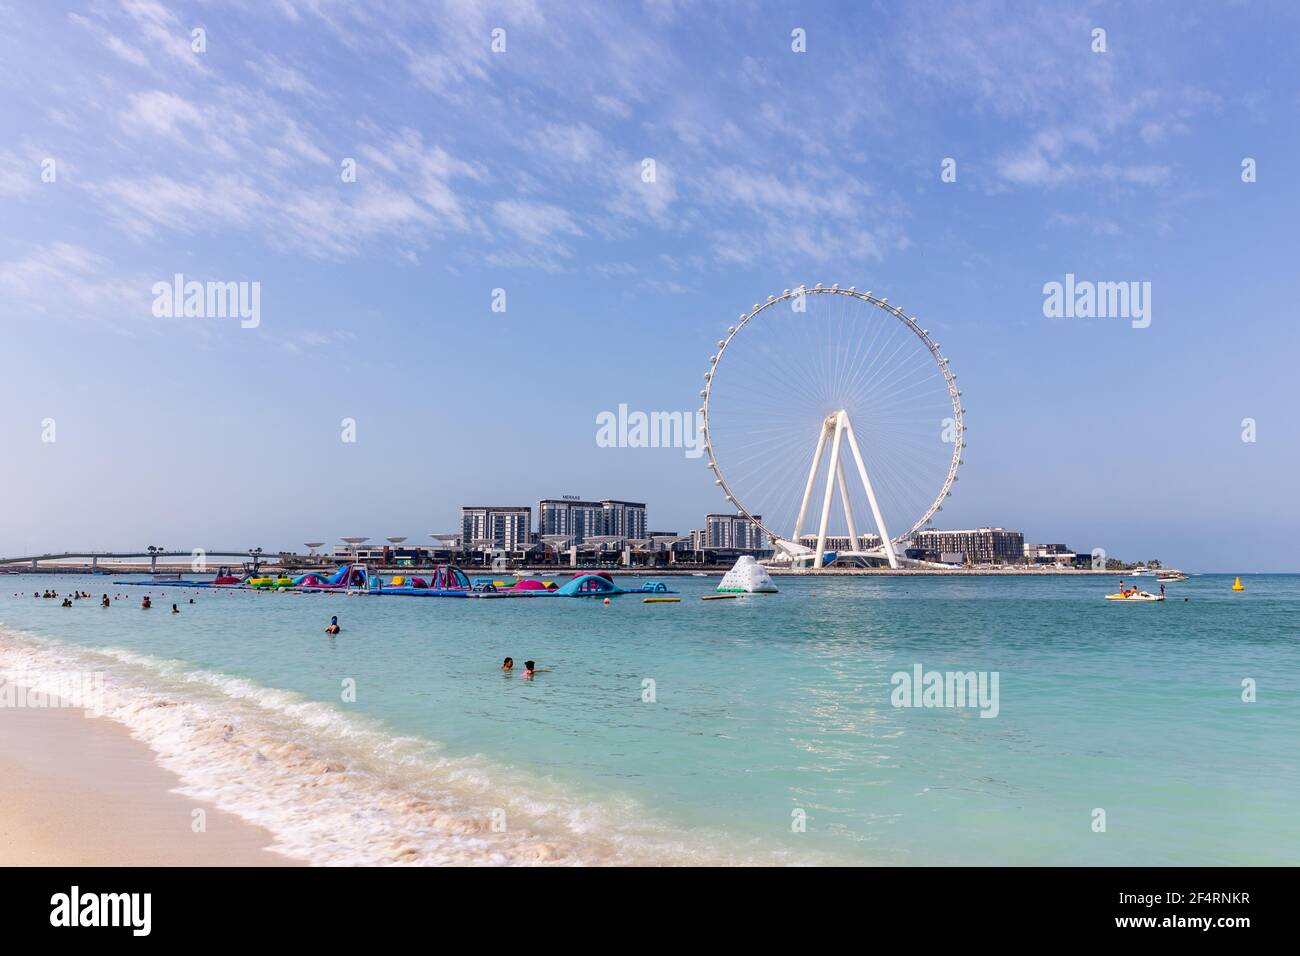 Dubaï, Émirats arabes Unis, 22.02.2021. Horizon de l'île Bluewaters avec Ain Dubai (Dubai Eye) la plus grande roue de ferris au monde, JBR Beach en premier plan. Banque D'Images